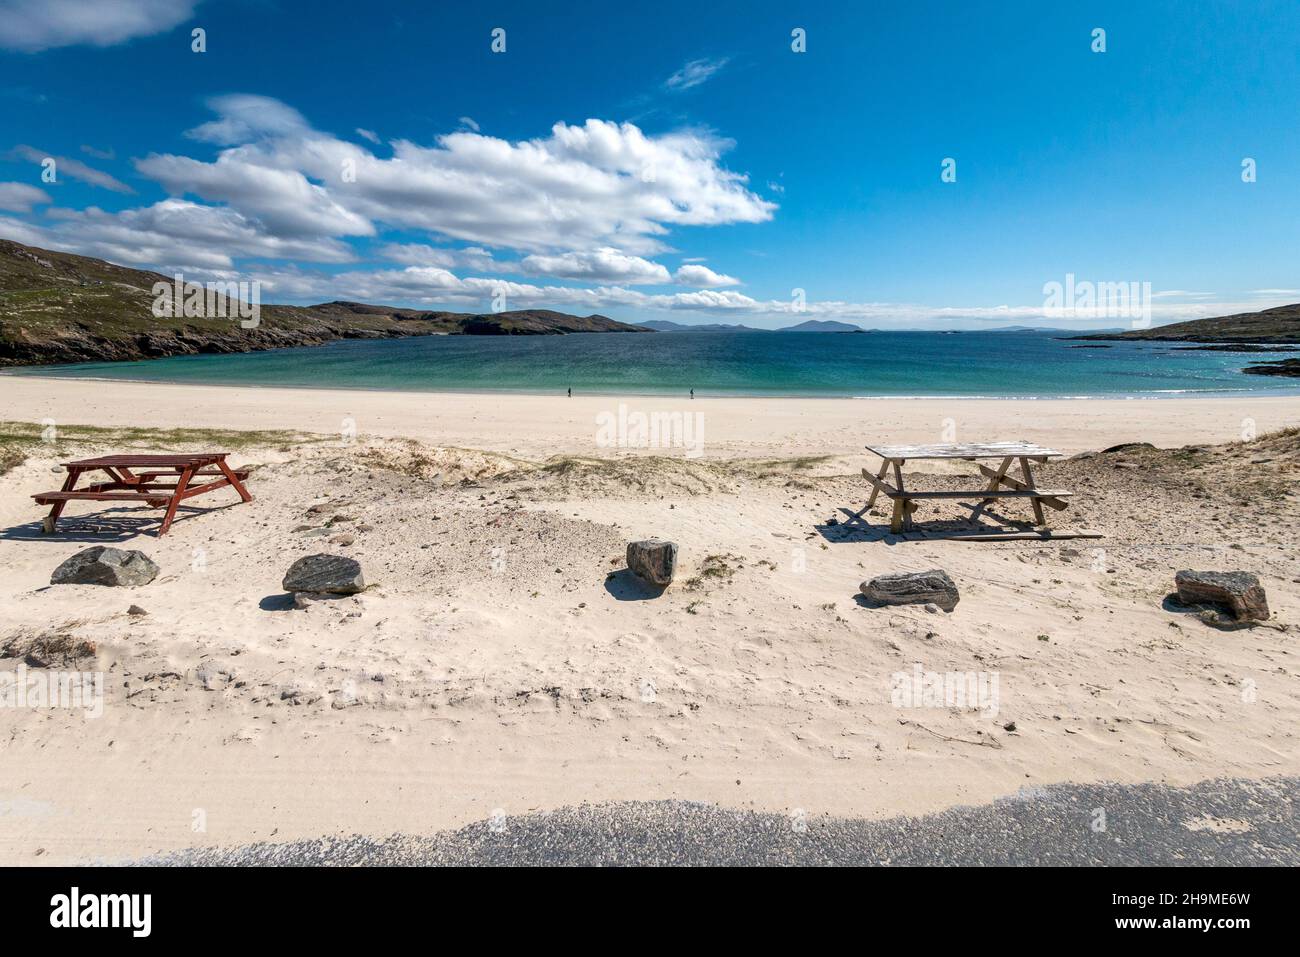 Tavoli da picnic presso la spiaggia remota e bella di Hushinish (Traigh Huisinis) sull'isola di Harris nelle Ebridi esterne, Scozia, Regno Unito Foto Stock